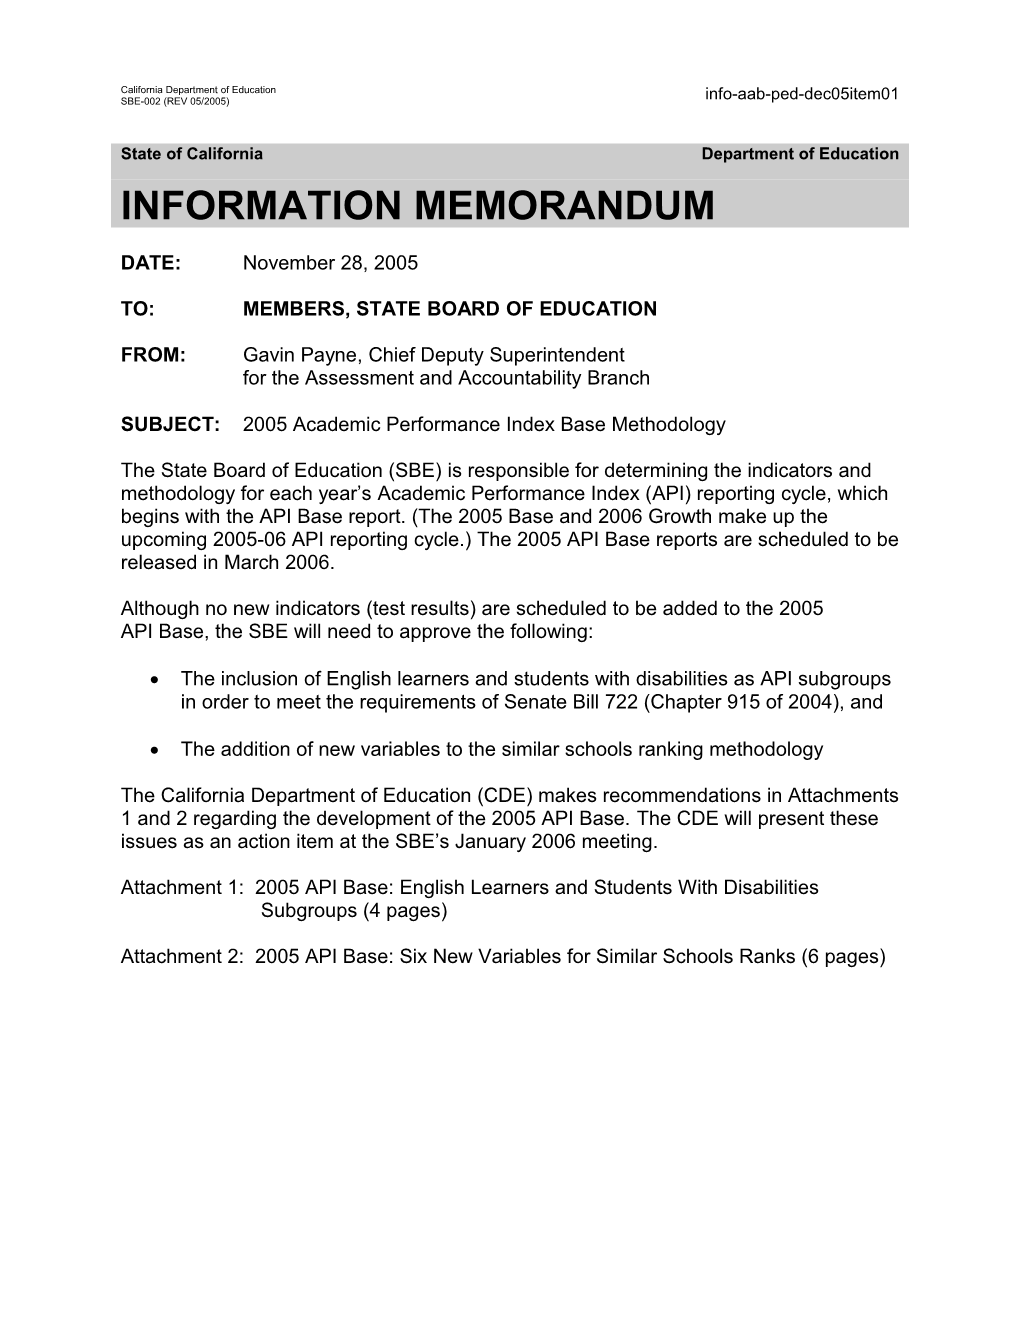 December 2005 PED Item 1 - Information Memorandum (CA State Board of Education)